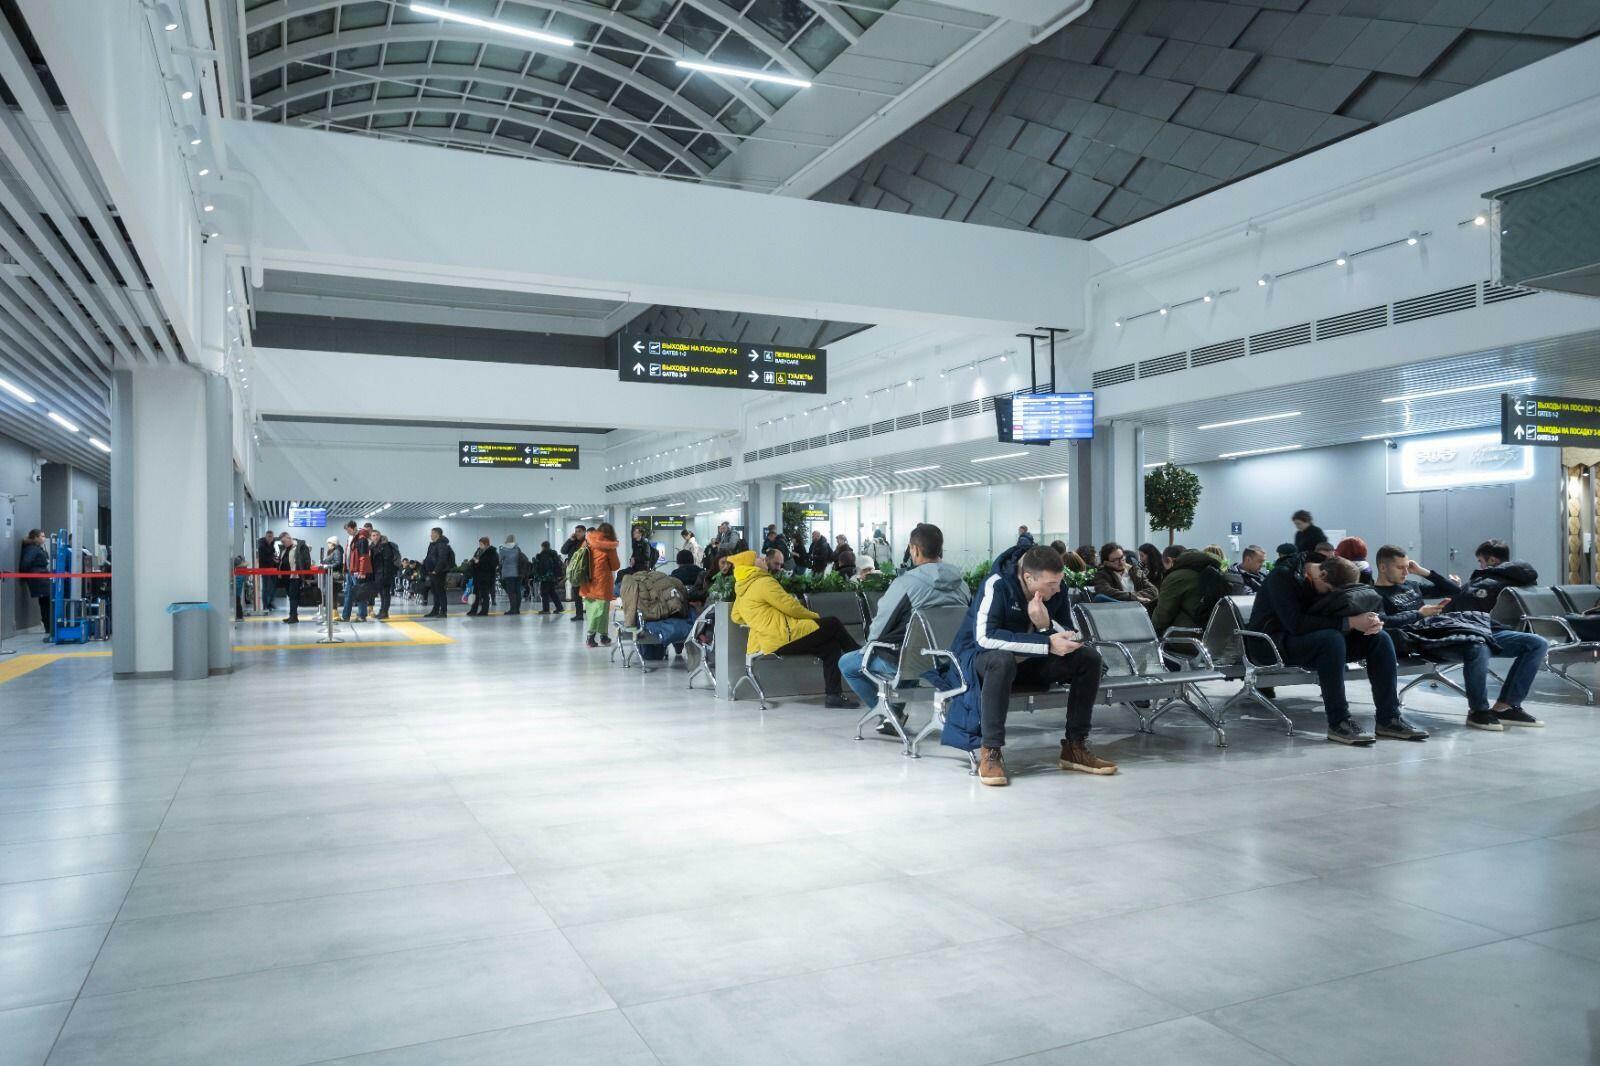 Уфимский аэропорт сегодня принял 4,5-миллионного пассажира